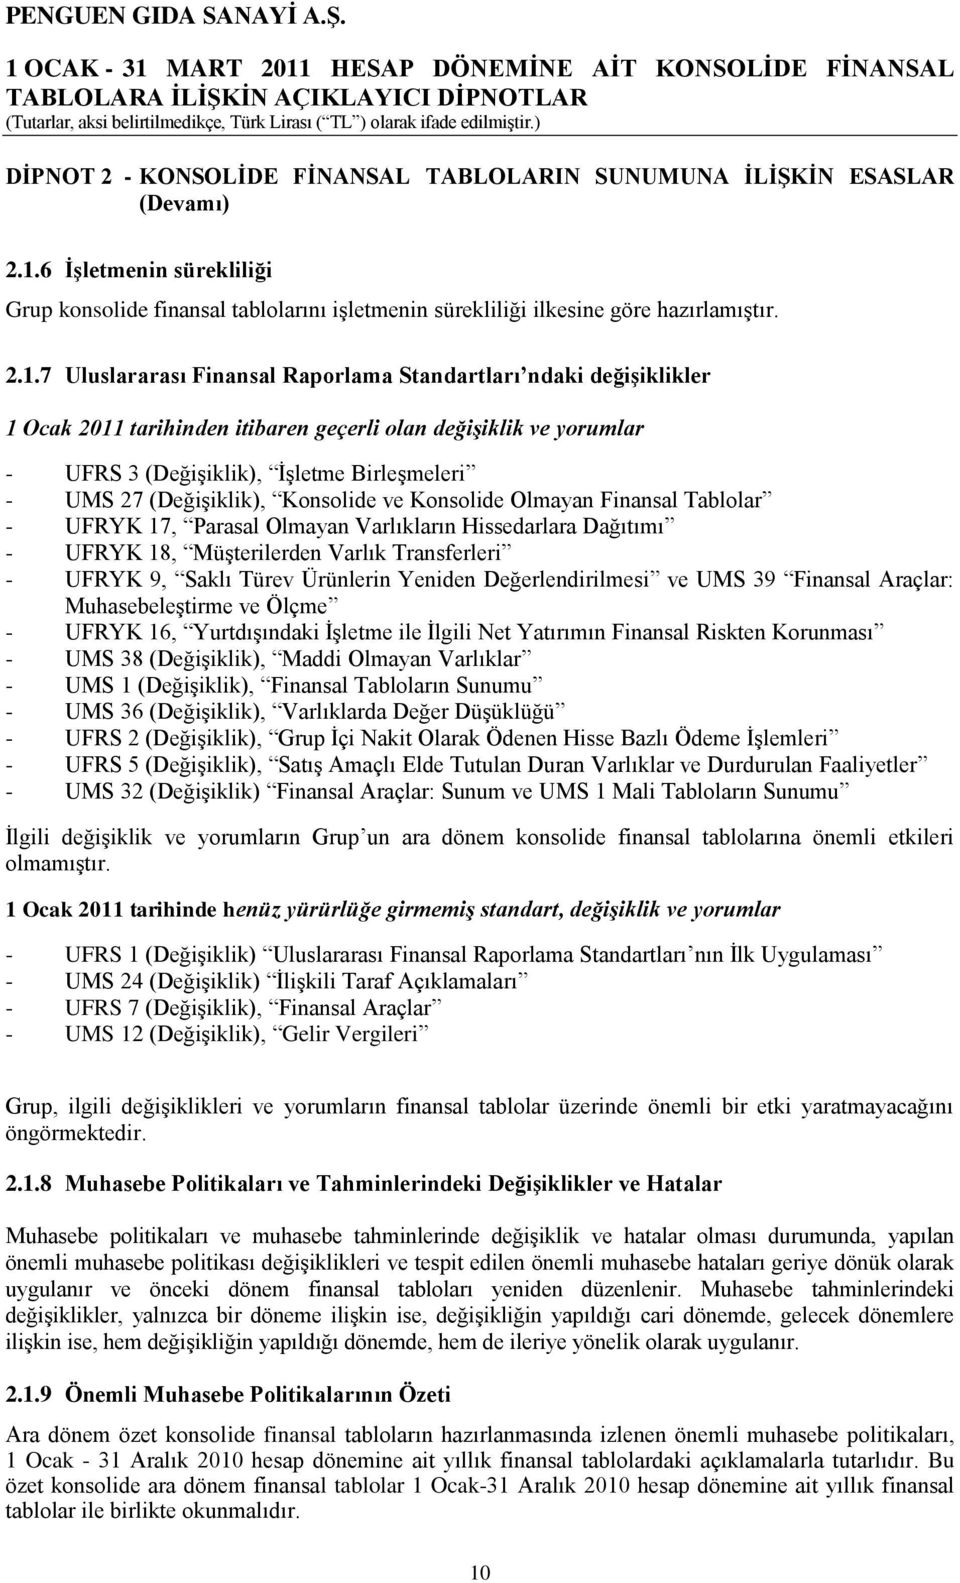 7 Uluslararası Finansal Raporlama Standartları ndaki değiģiklikler 1 Ocak 2011 tarihinden itibaren geçerli olan değişiklik ve yorumlar - UFRS 3 (DeğiĢiklik), ĠĢletme BirleĢmeleri - UMS 27